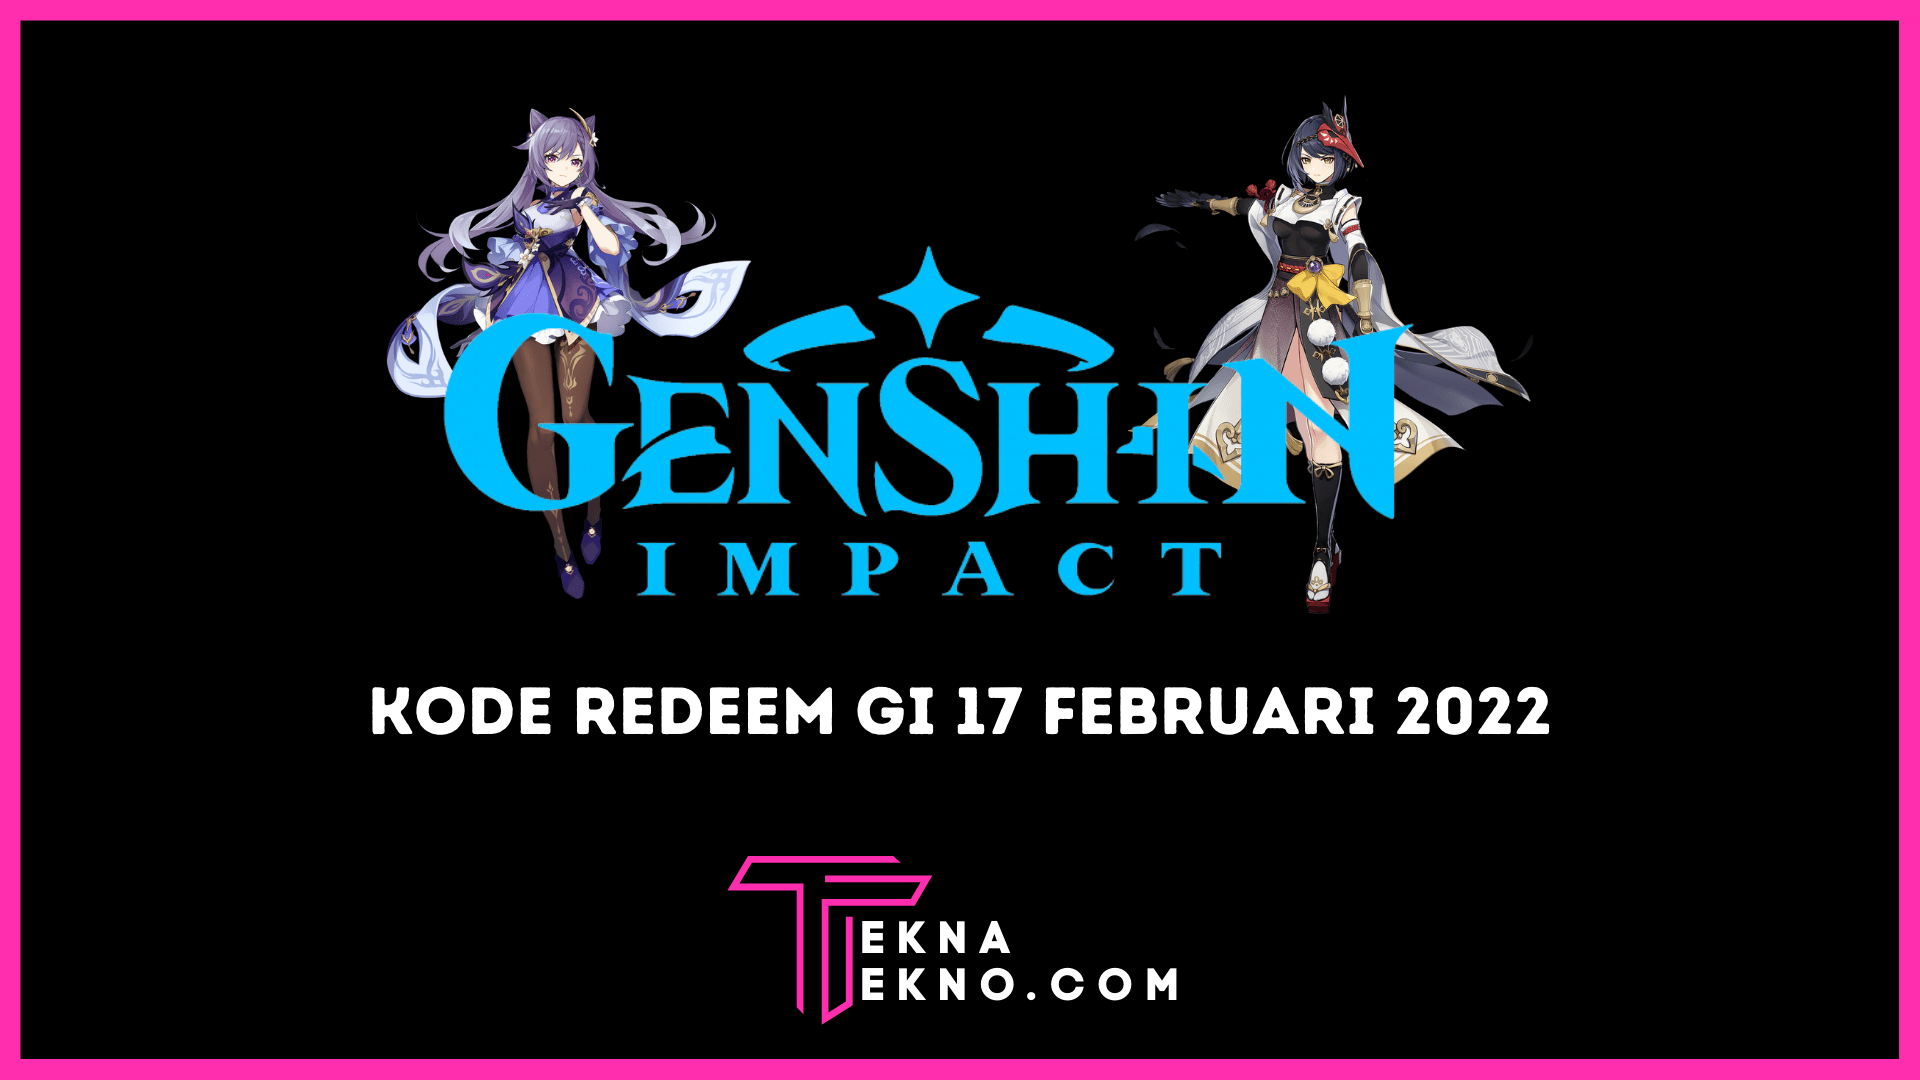 Klaim Kode Redeem Genshin Impact 17 Februari Terbaru